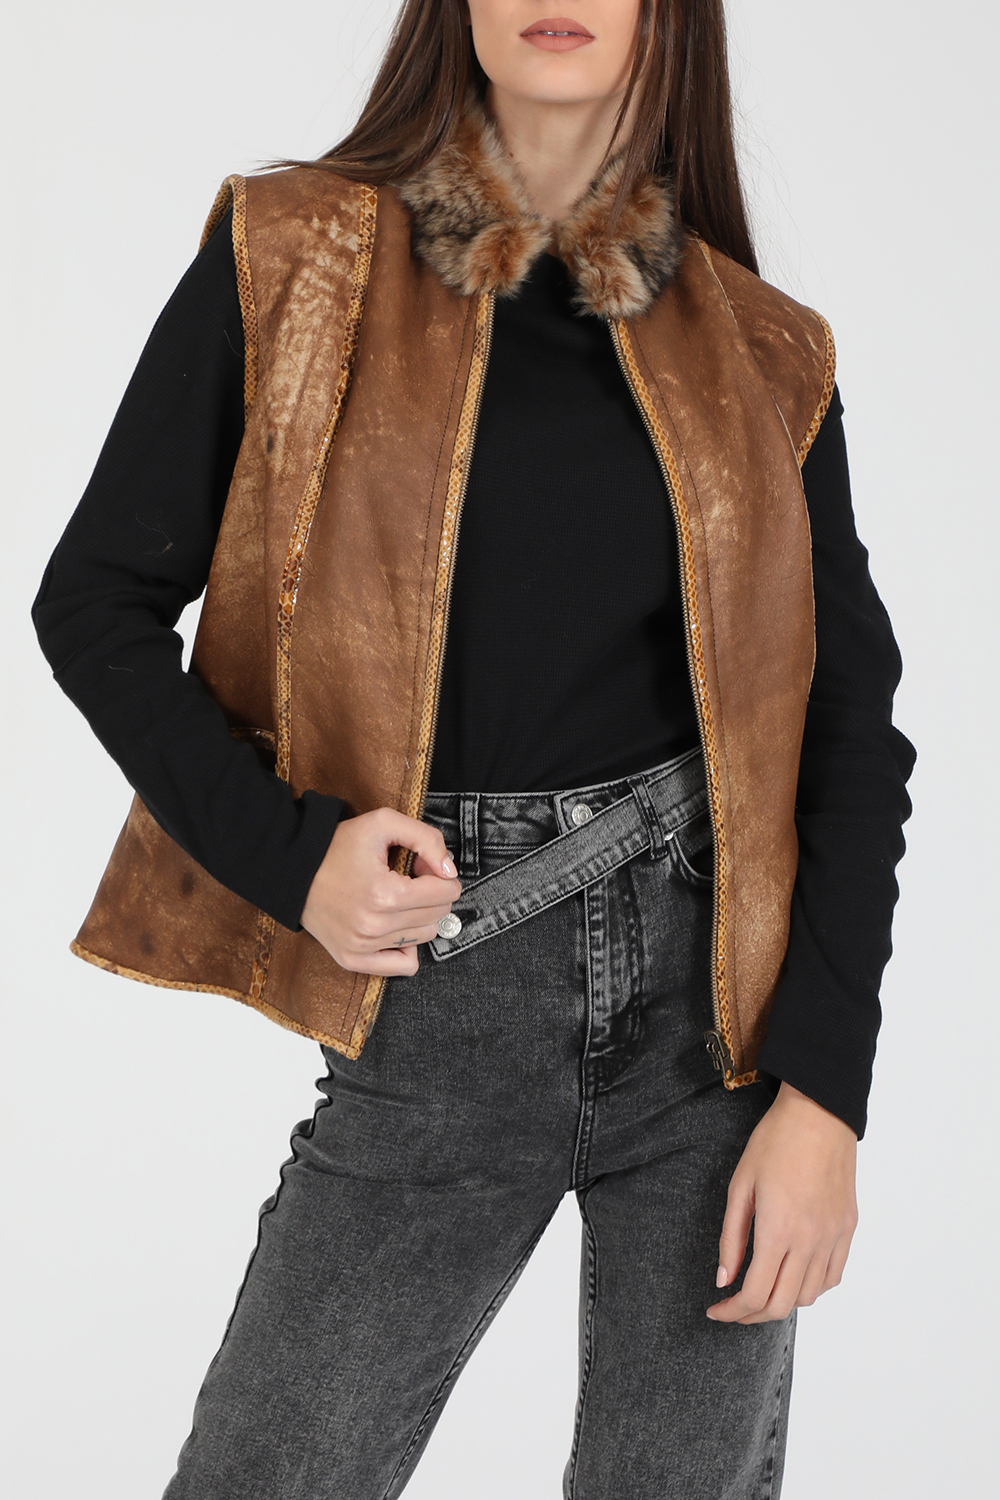 Γυναικεία/Ρούχα/Πανωφόρια/Δερμάτινα τζάκετς RITSELFURS - Γυναικείο αμάνικο δερμάτινο jacket RITSELFURS VEST DOUBLEFACED MOUTON FUR καφέ